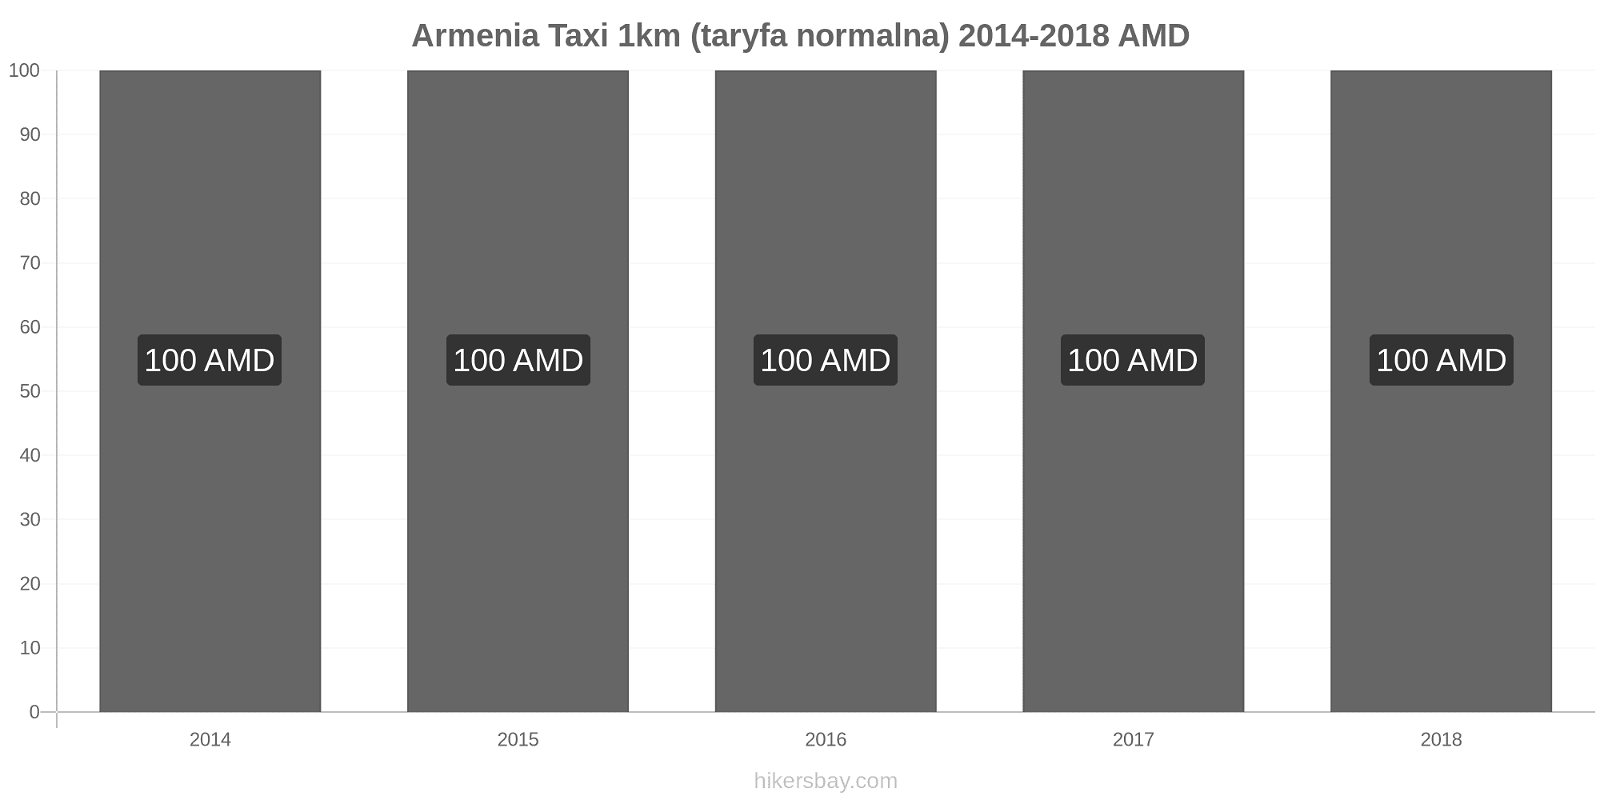 Armenia zmiany cen Taxi 1km (taryfa normalna) hikersbay.com